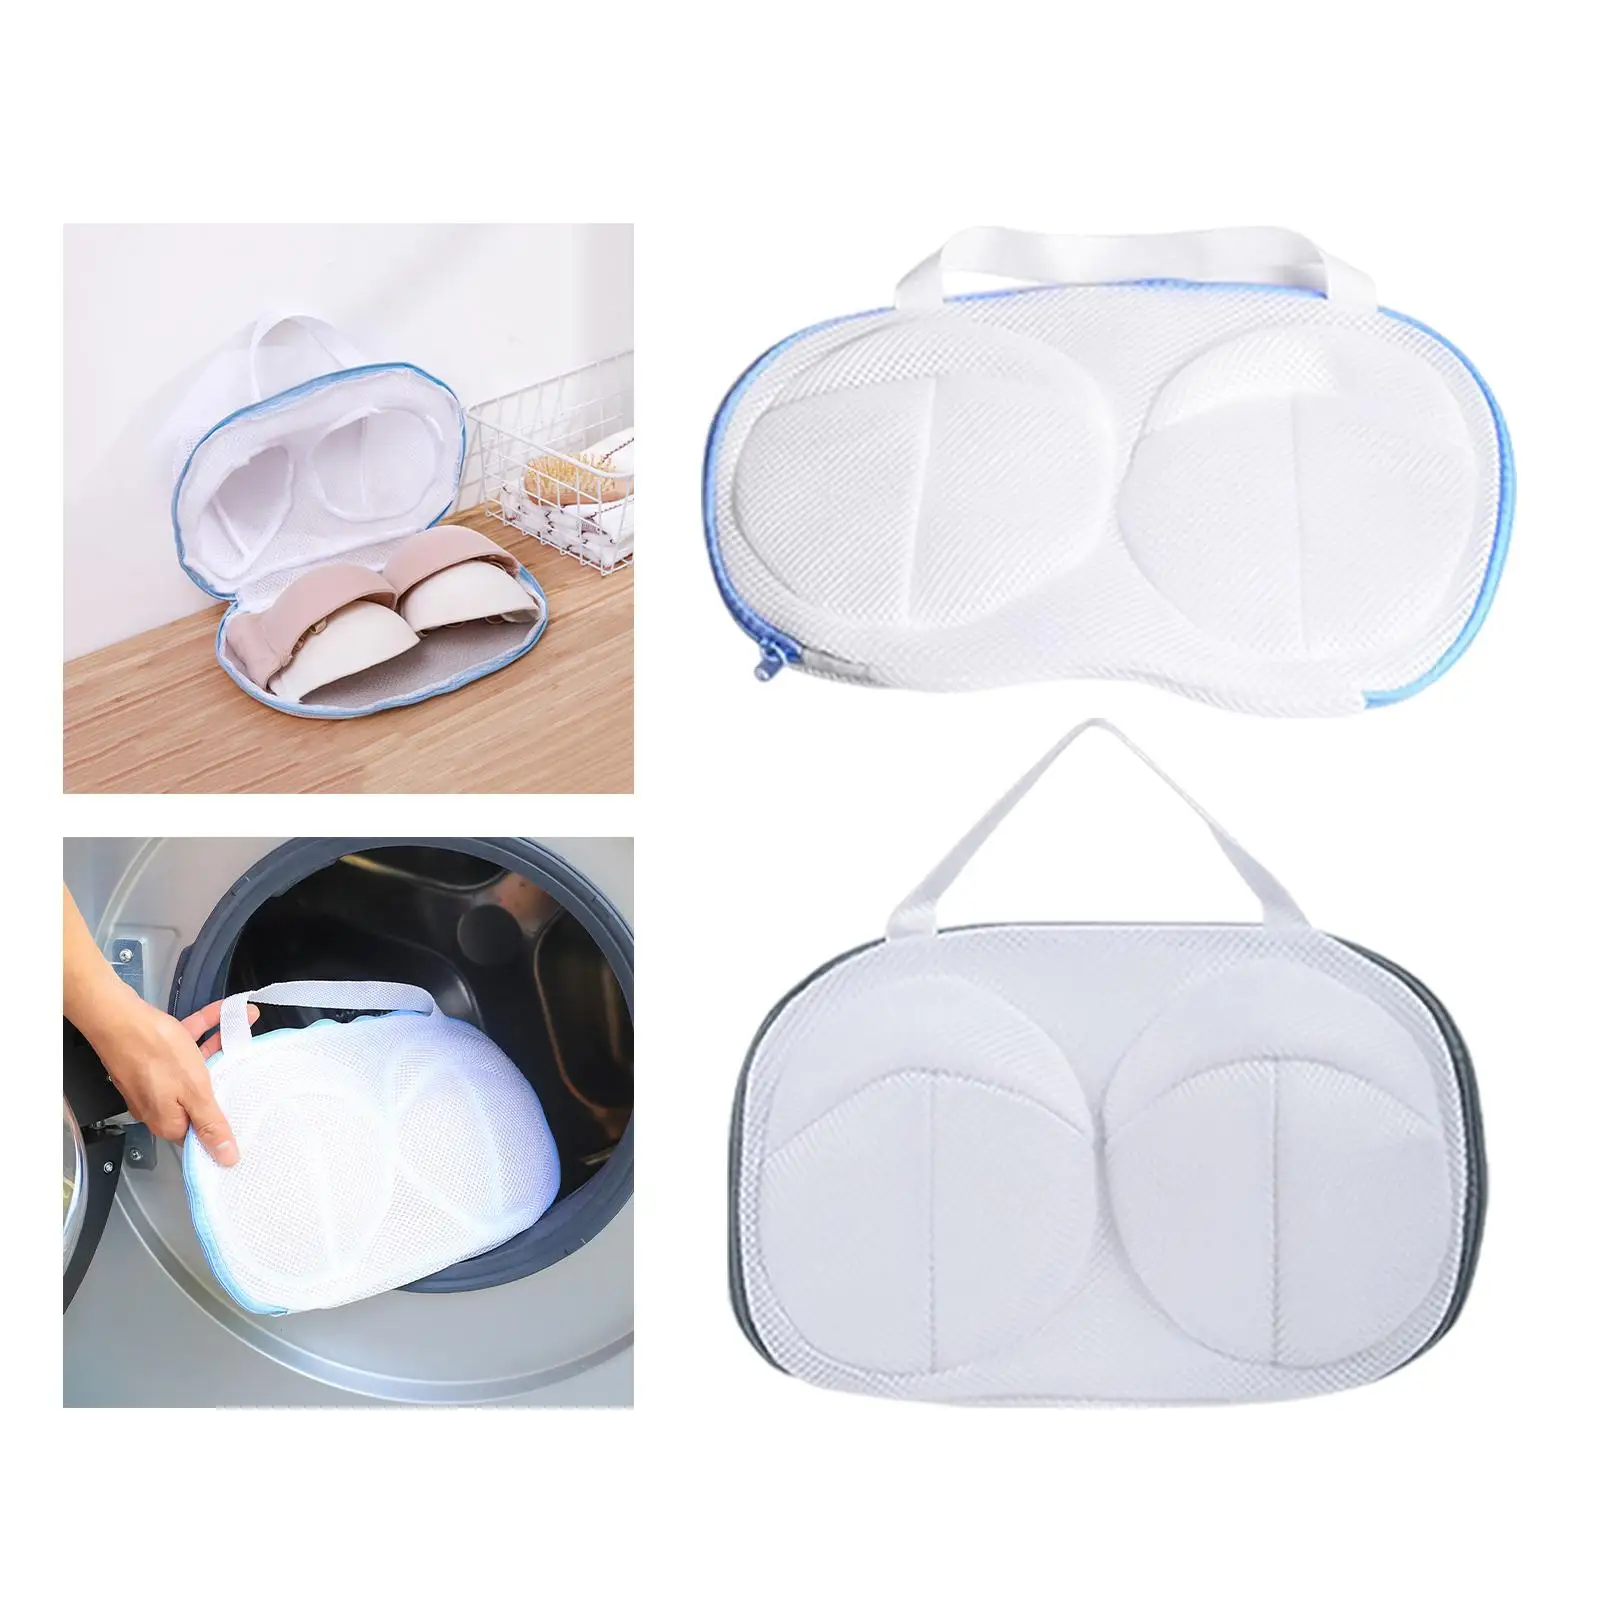 Bra Washing Bag, Fine Mesh Protect Lingerie Mesh Laundry Bag for Bra Bra Net Washing Bag